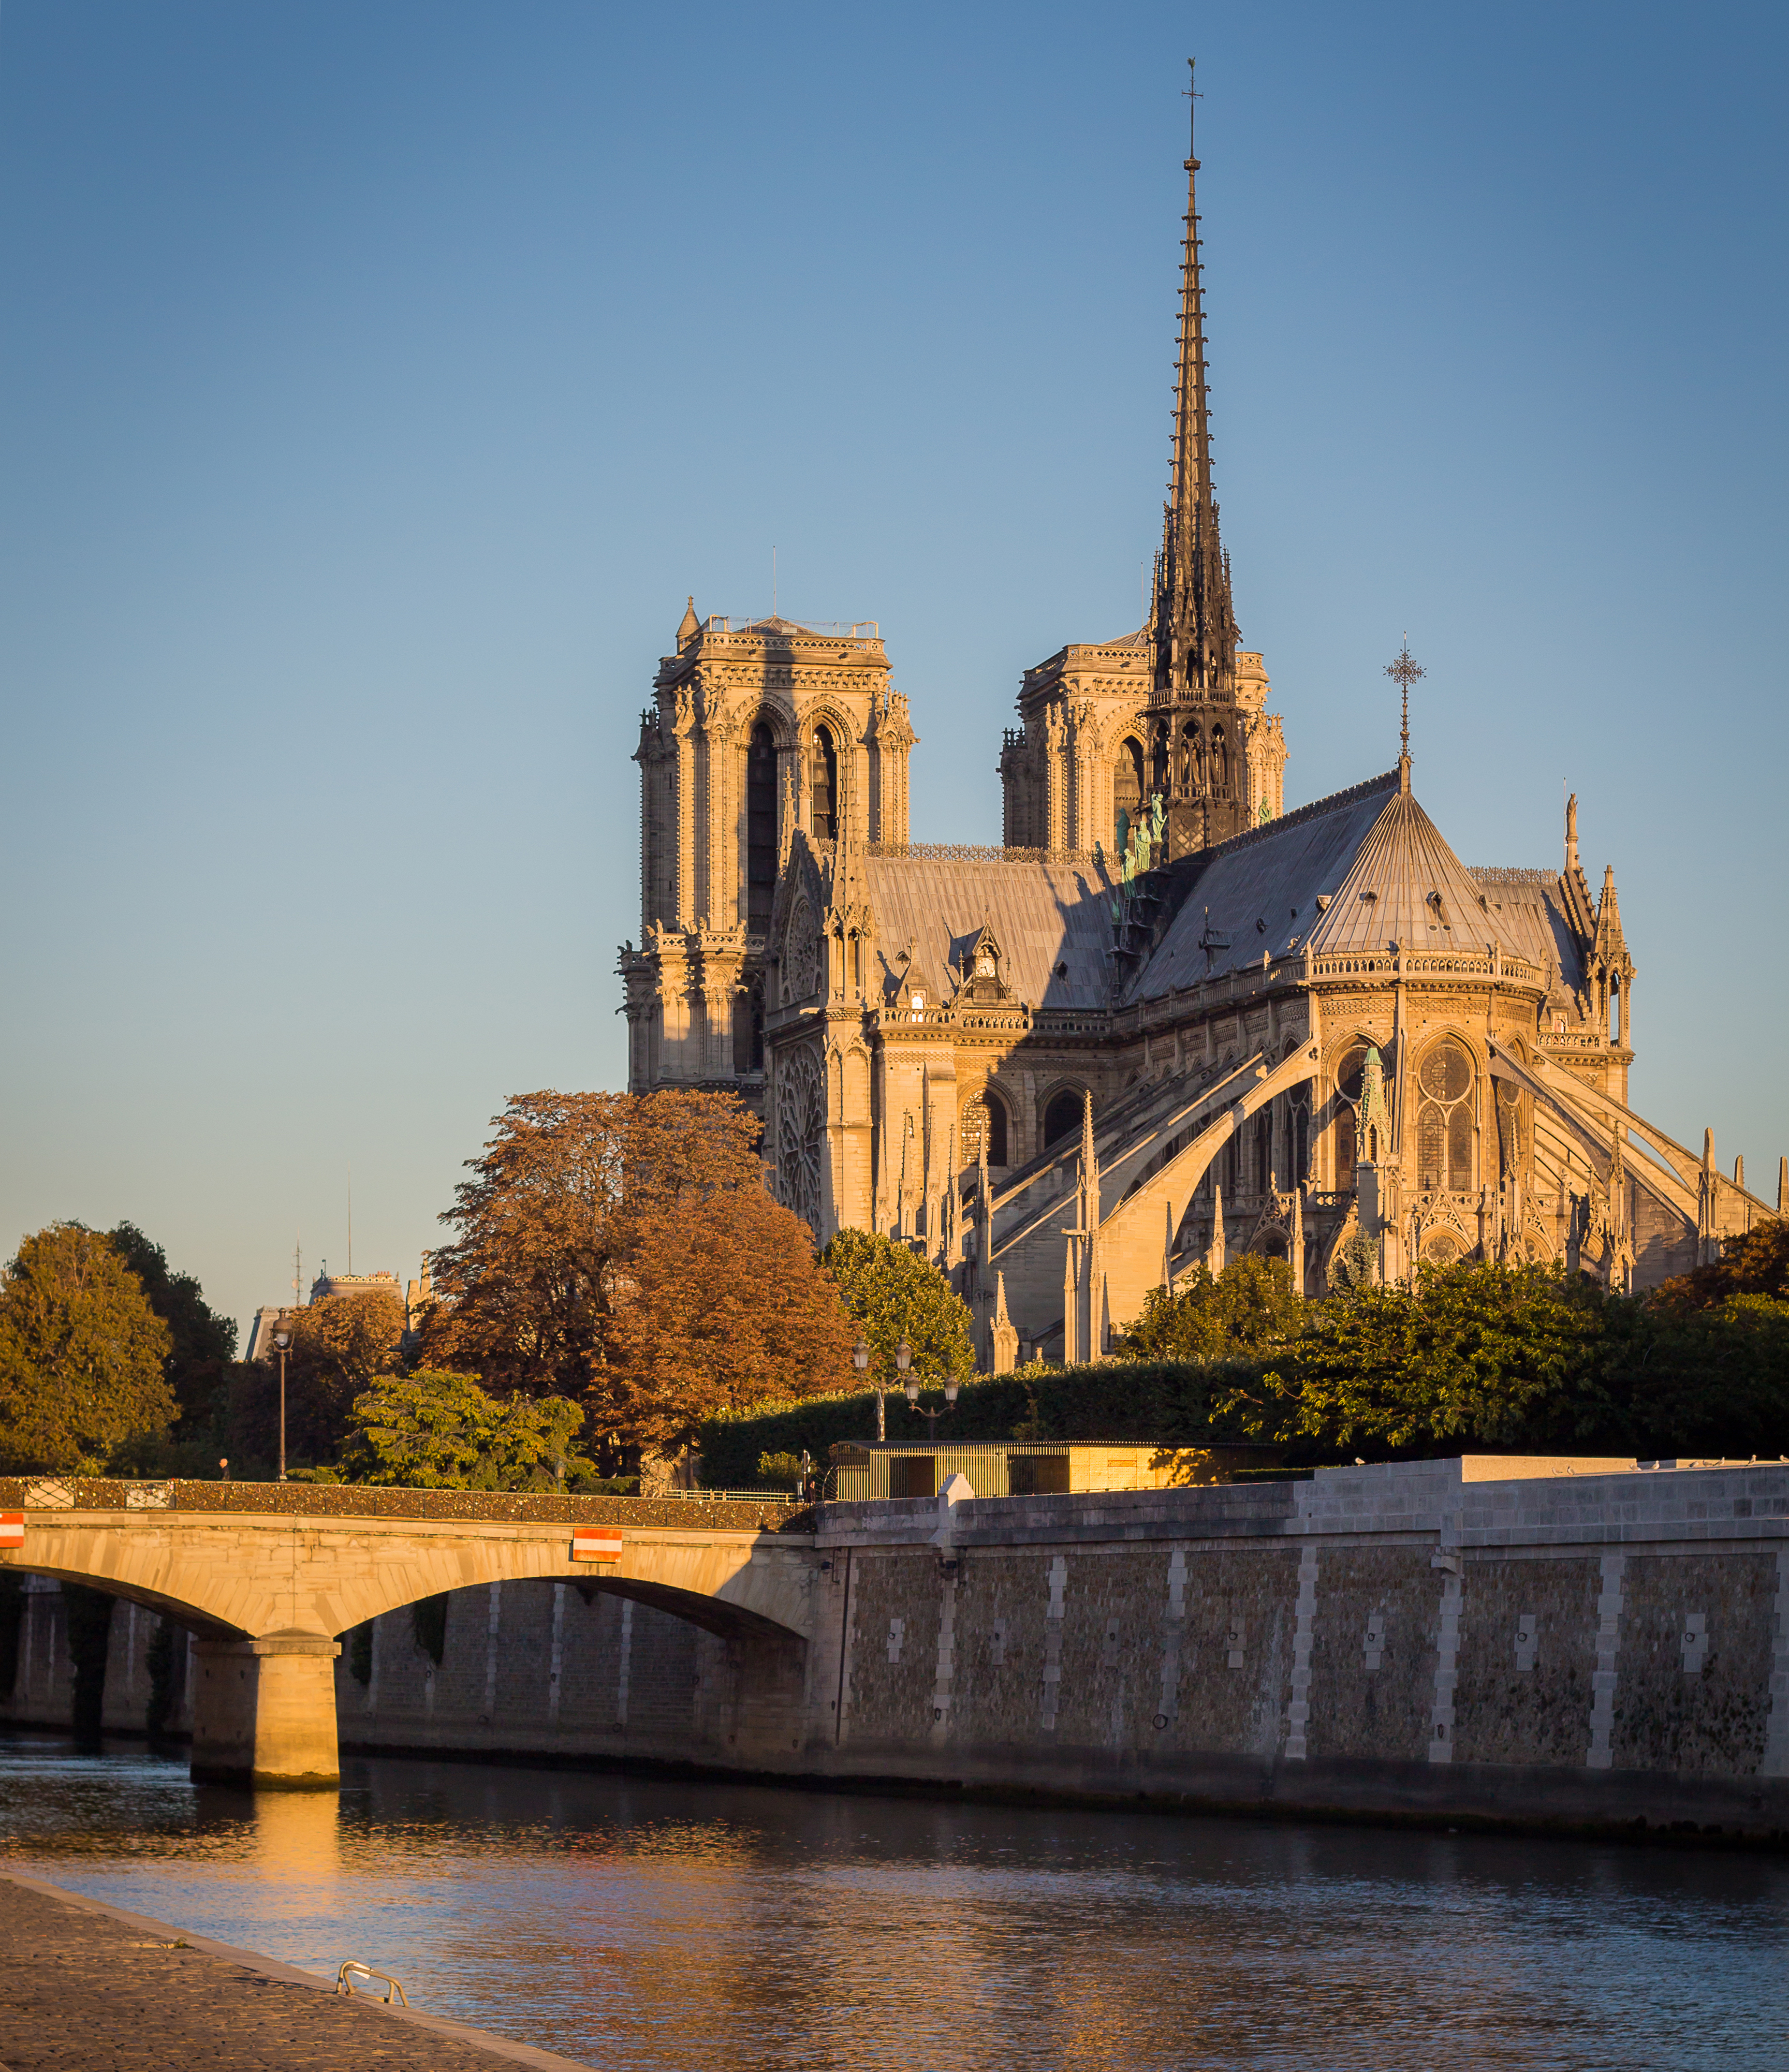 Cathédrale Notre Dame, Paris 30 September 2015